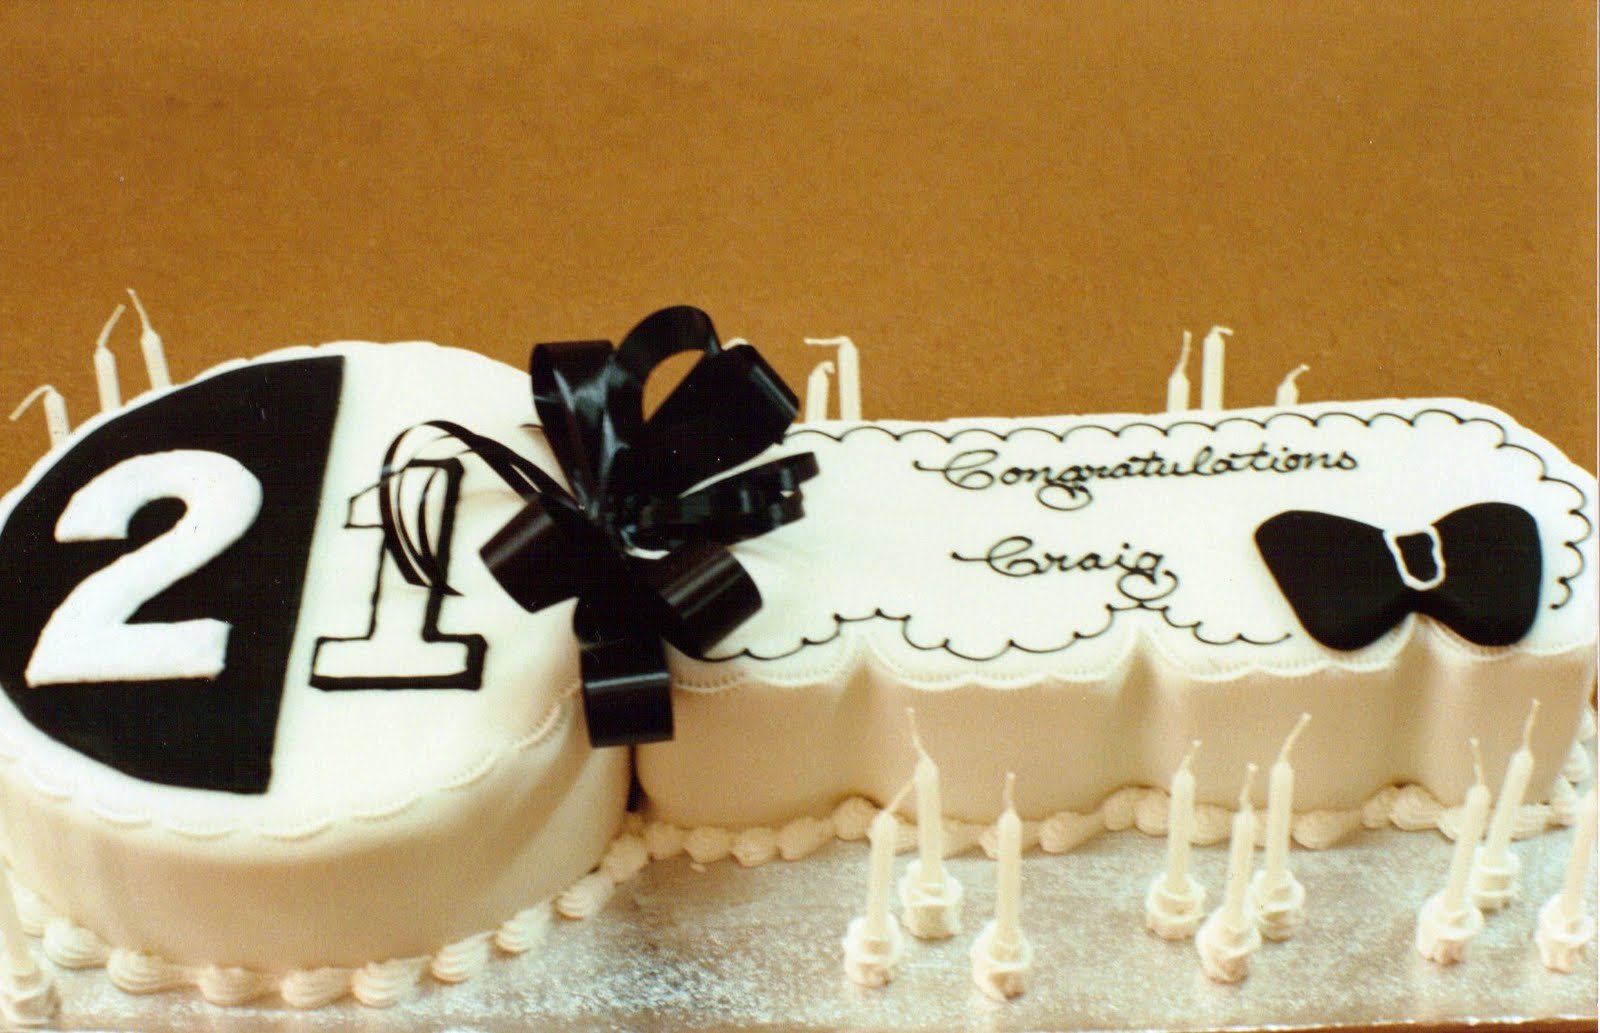 17 апреля 21 год. Торт на день рождения 21 год. Торт на 21 год парню. Торт на день рождения 21 год парню.